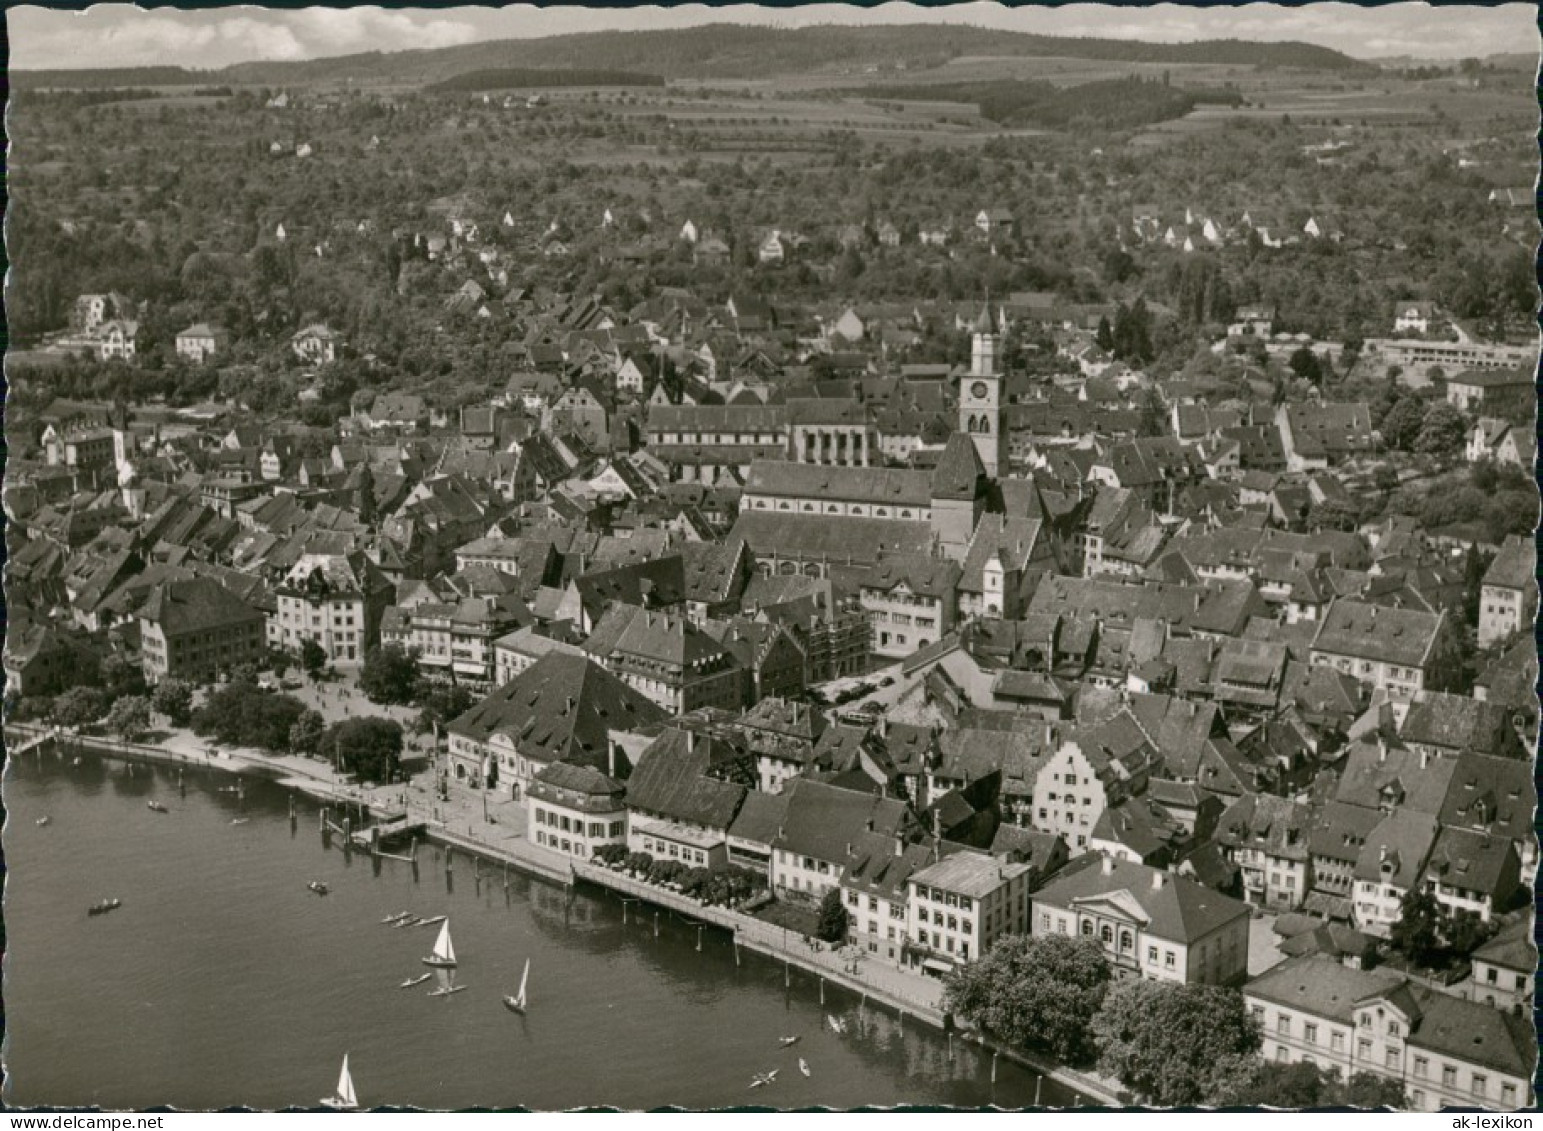 Ansichtskarte Überlingen Luftbild 1968 - Ueberlingen